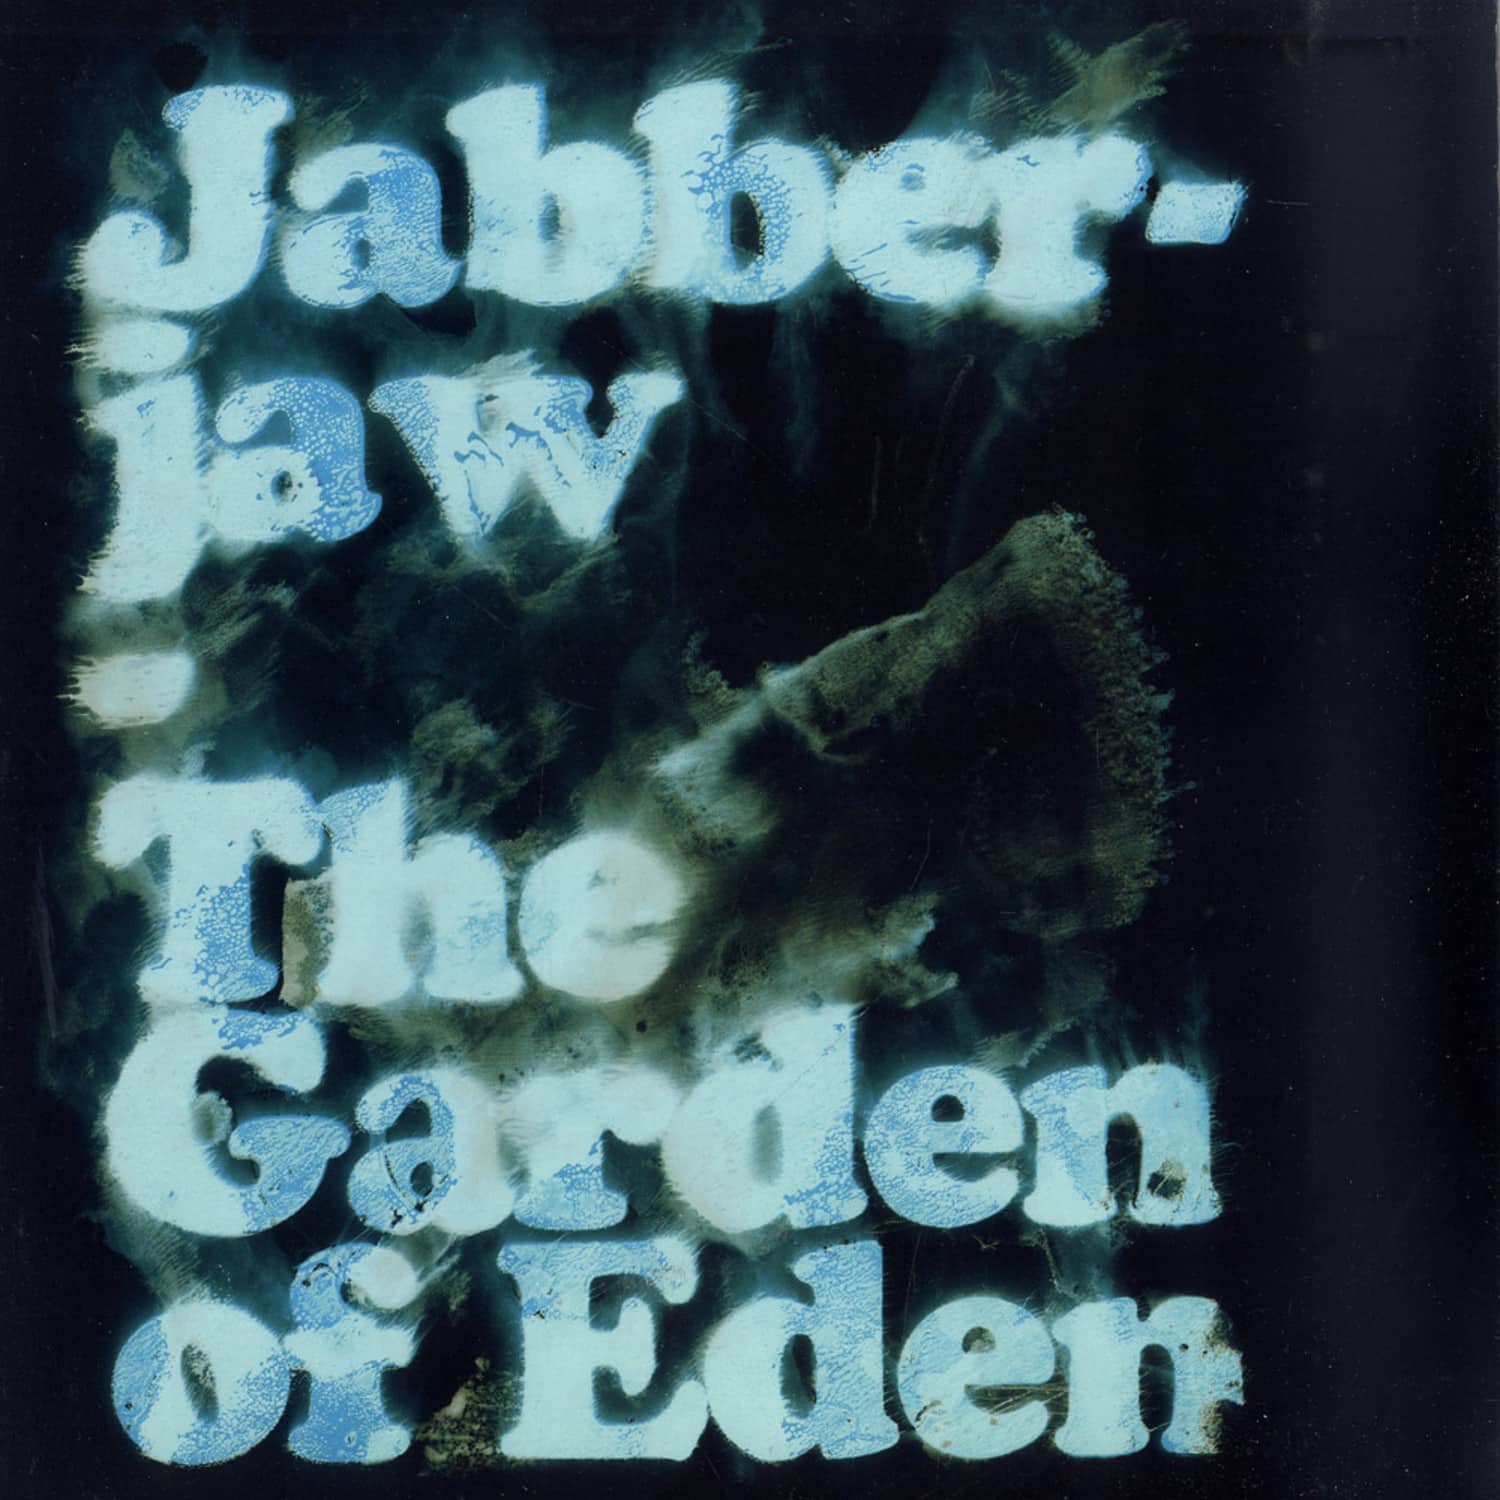 Jabberjaw - THE GARDEN OF EDEN